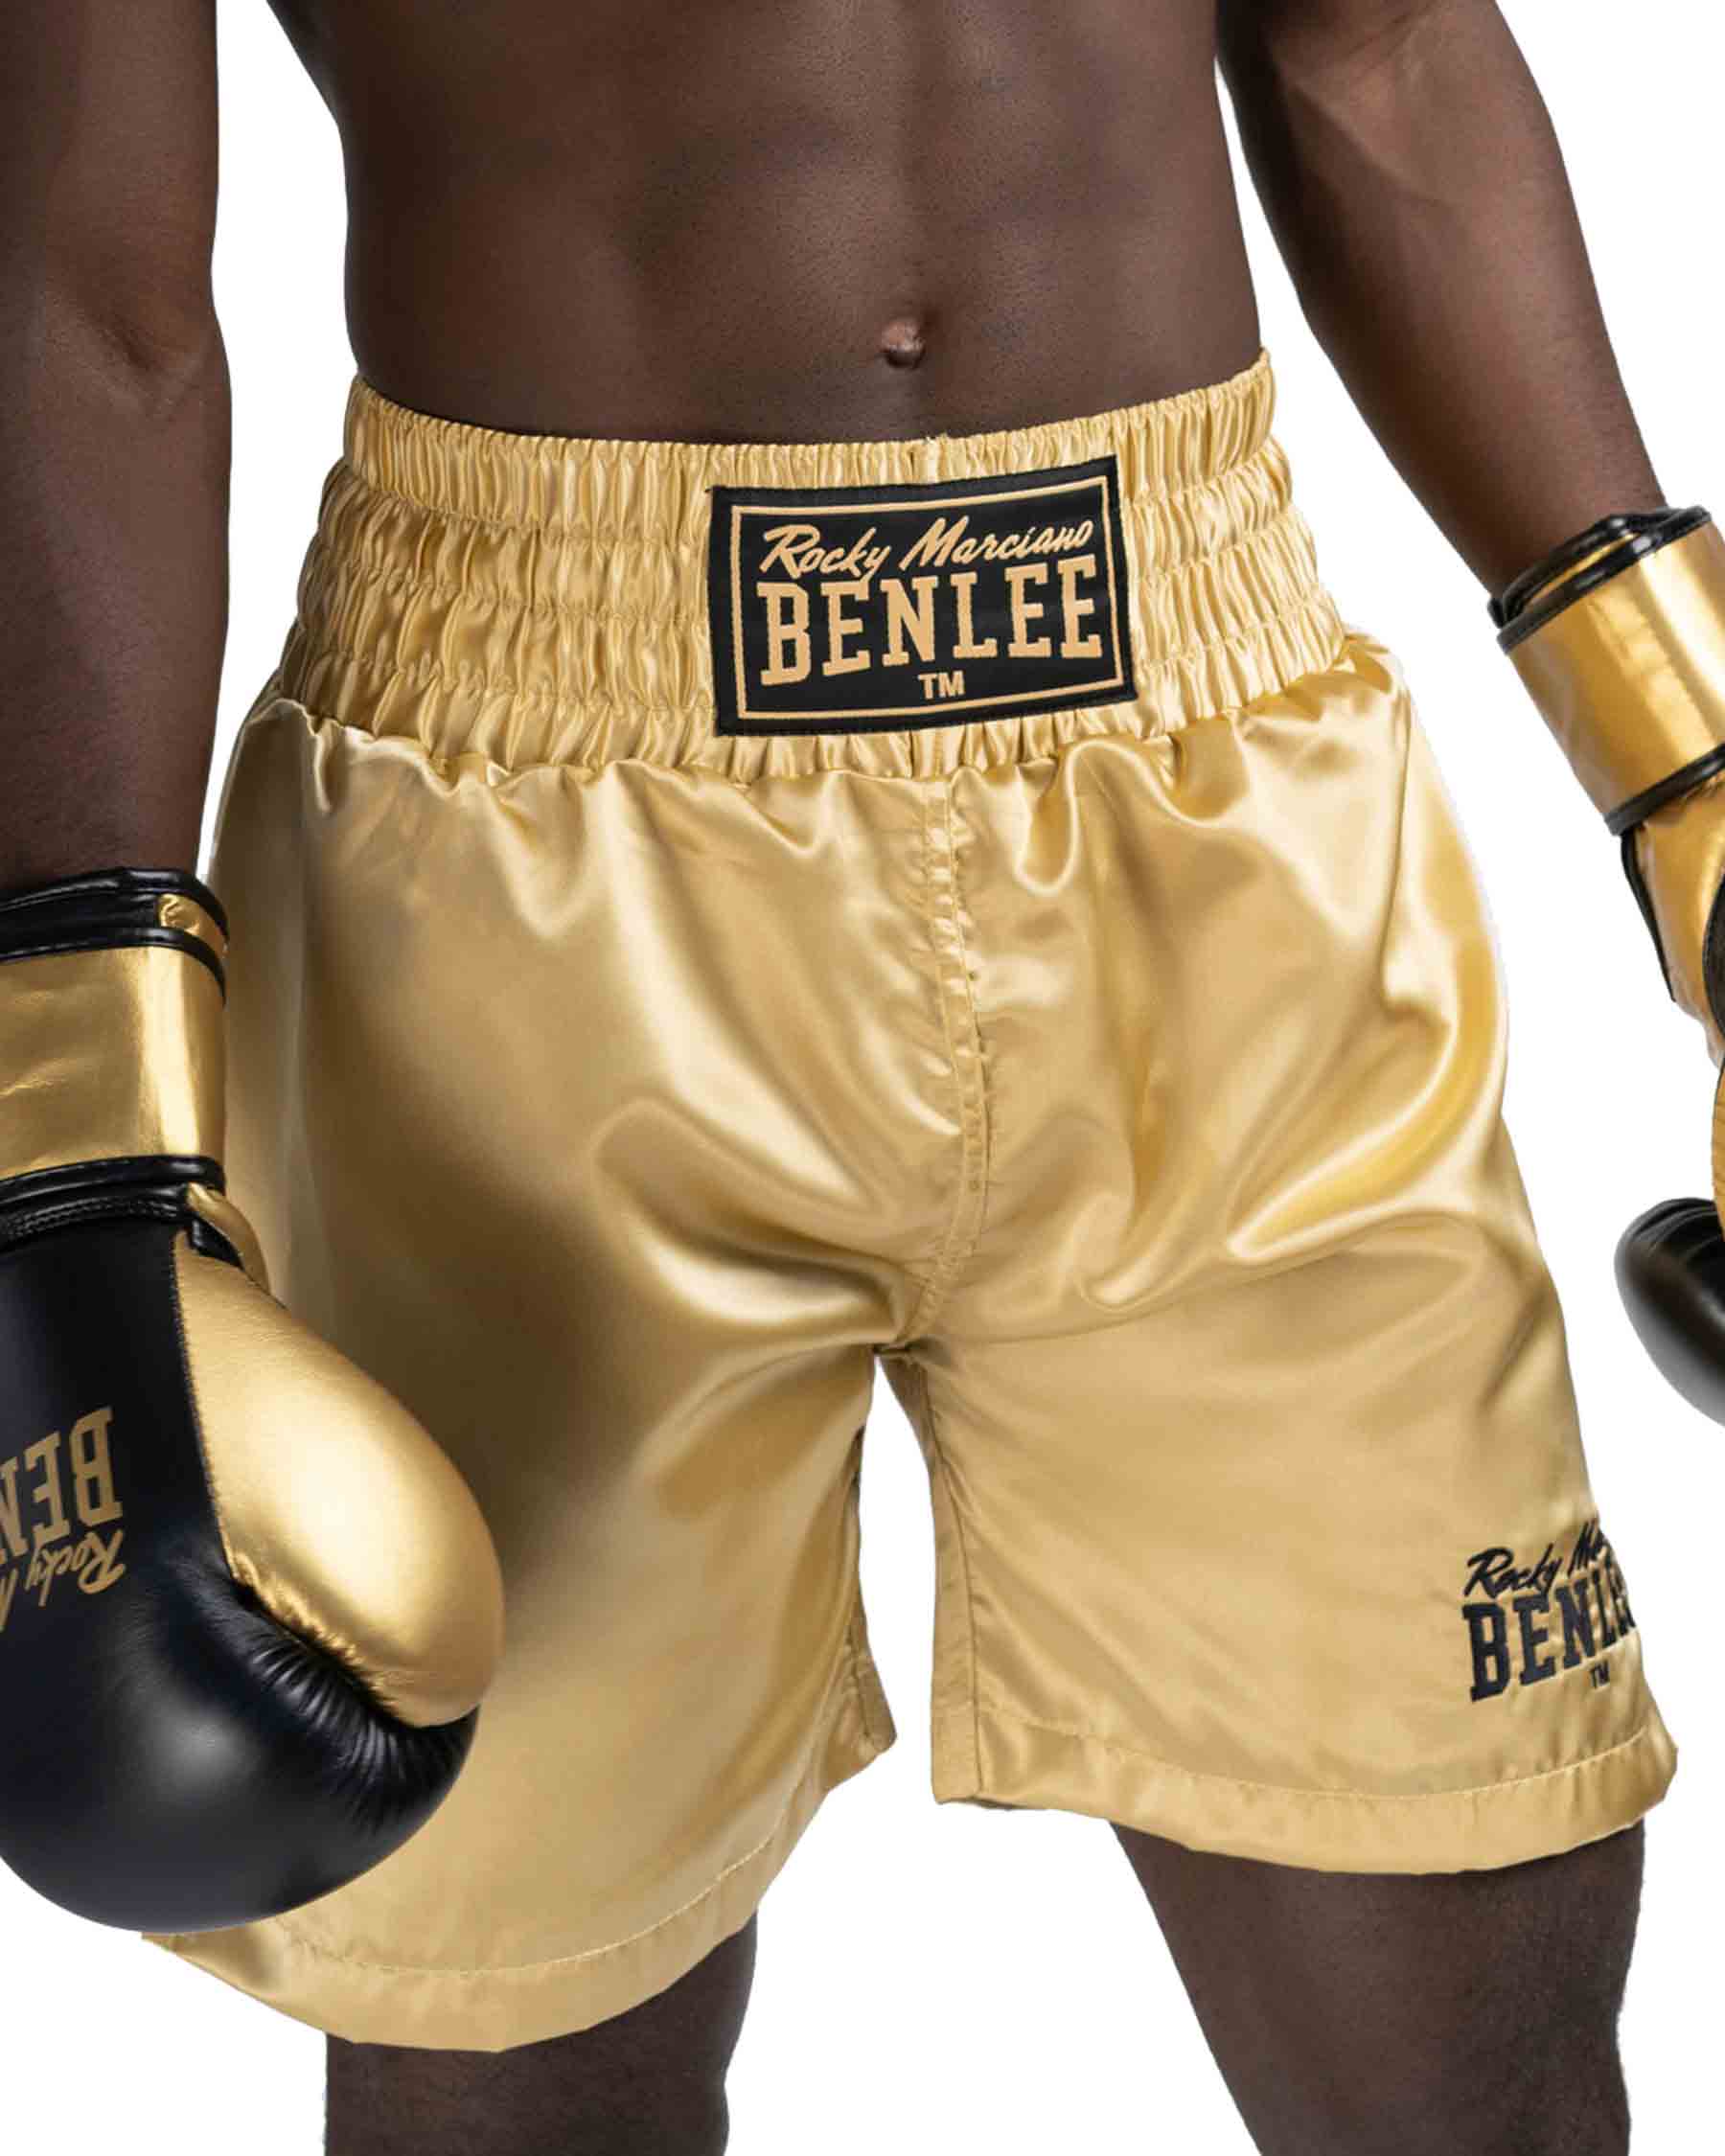 BEN LEE Ben Lee UNI BOXING - Short boxe Homme gold - Private Sport Shop